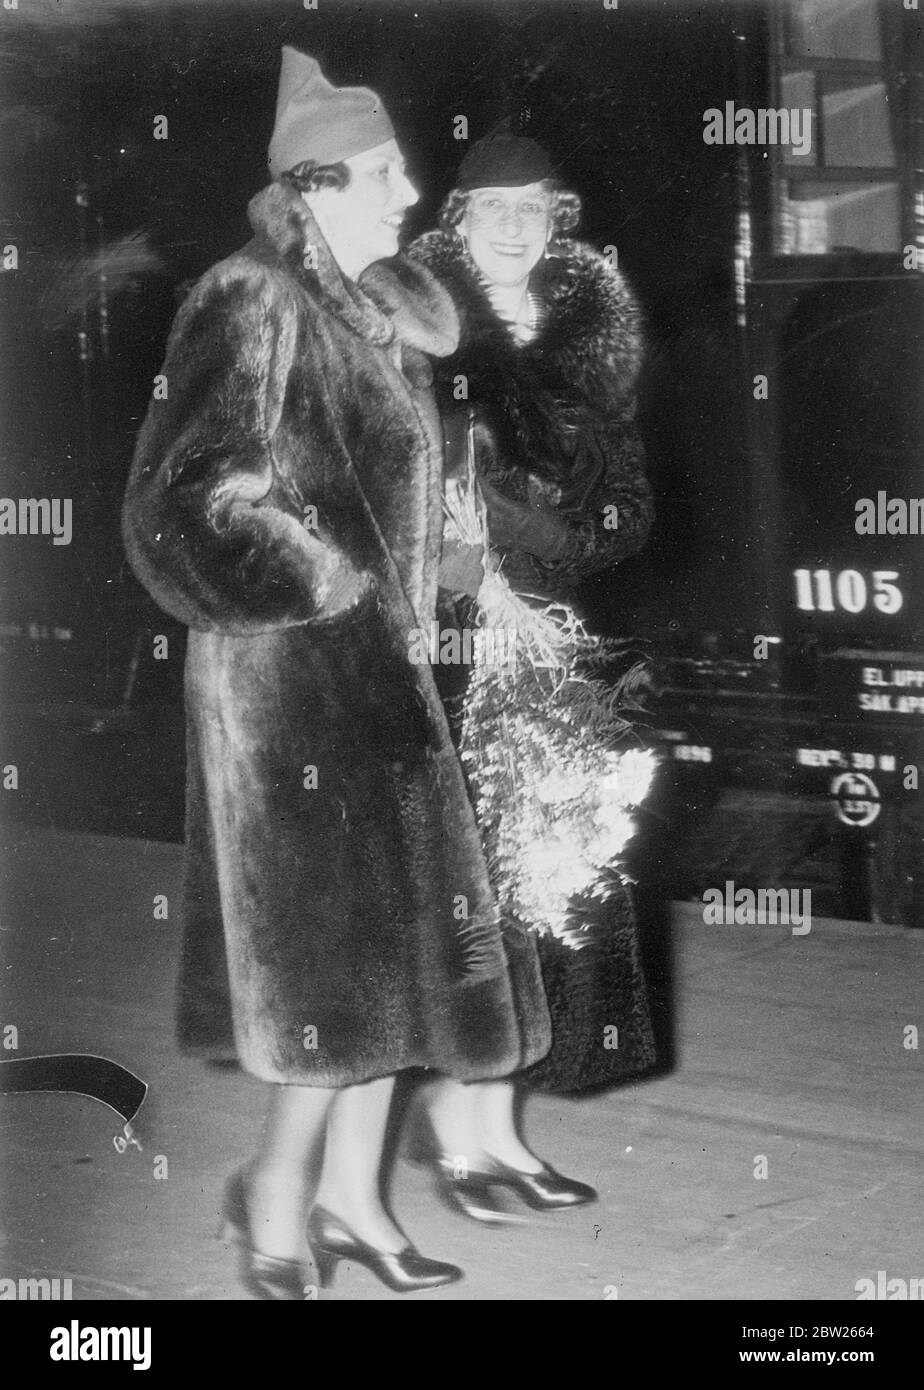 La princesa Marta de Noruega recibe a su madre en Estocolmo. La princesa Marta de Noruega fue recibida por su madre, la princesa Ingeborg de Suecia, cuando llegó a Estocolmo para unirse a las celebraciones de cumpleaños de su padre, el príncipe Carl de Suecia. El Príncipe Heredero Olav de Noruega, esposo de la Princesa Marta, también está asistiendo a las celebraciones. Espectáculos de fotos, la princesa Marta de la Corona (cámara más cercana) con su madre, la princesa Ingeborg, a su llegada a Estocolmo. 26 de febrero de 26 1938 Foto de stock